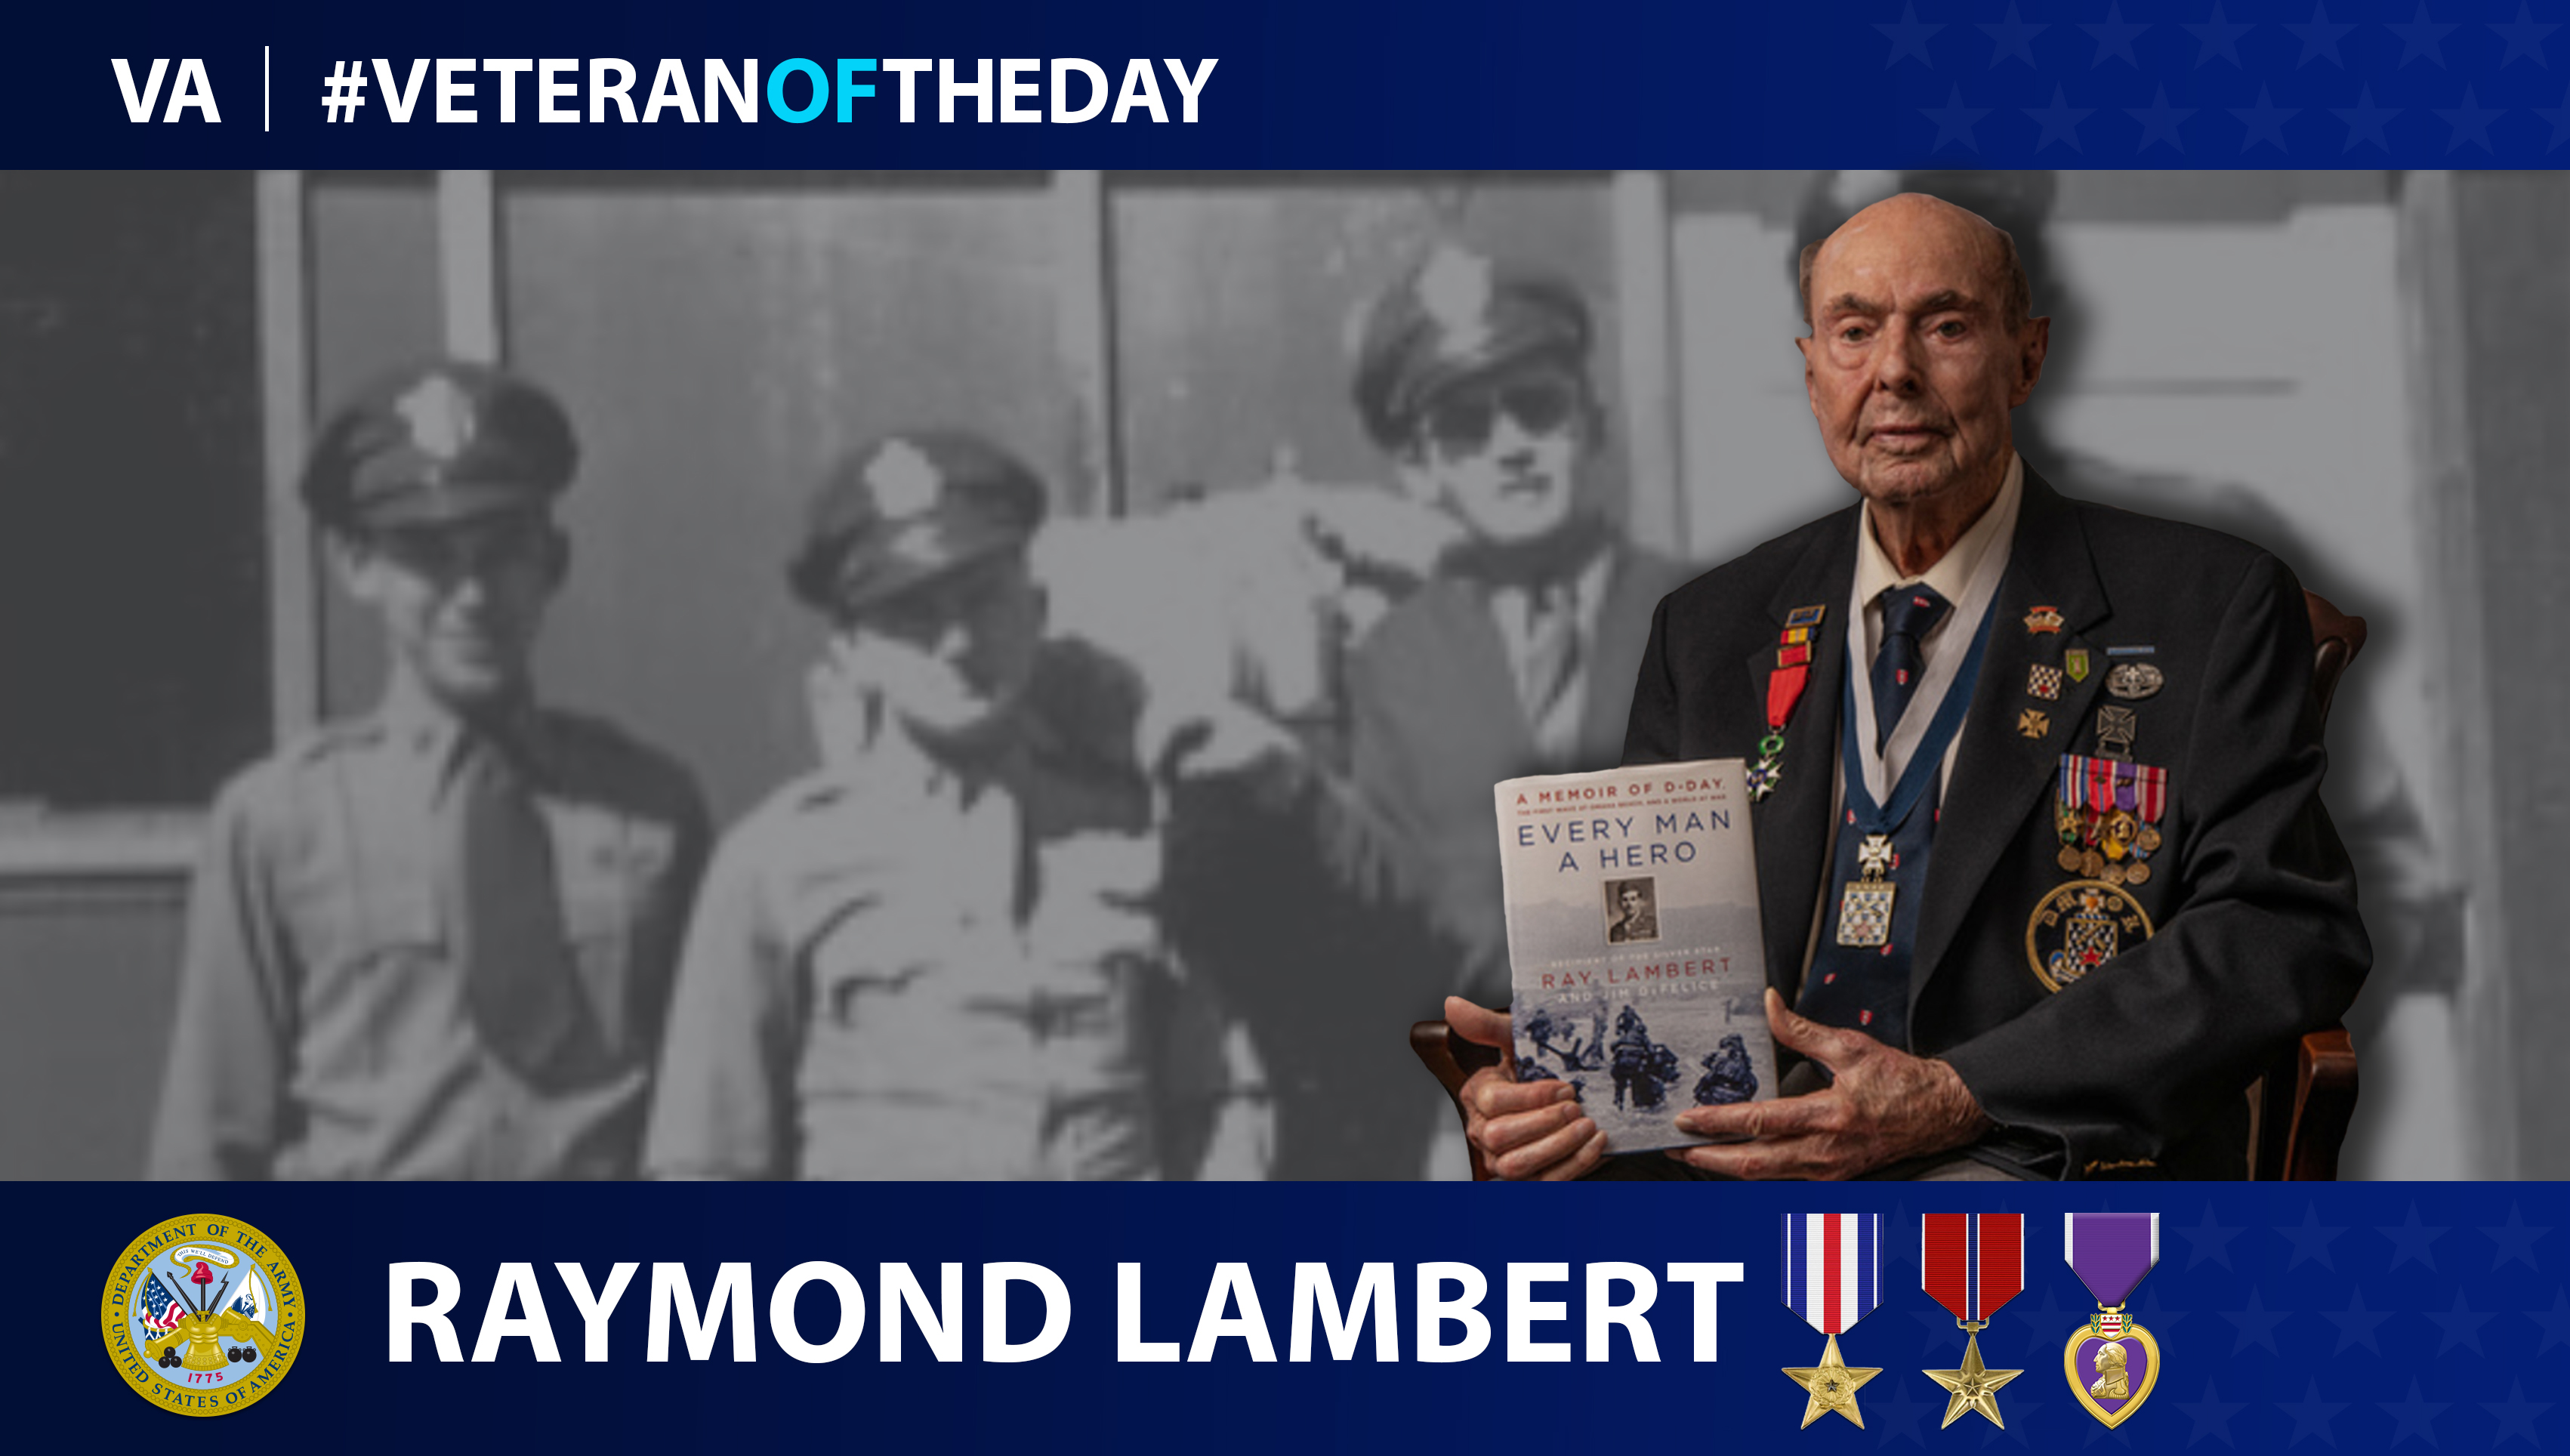 Army Veteran Raymond Lambert is today's Veteran of the day.